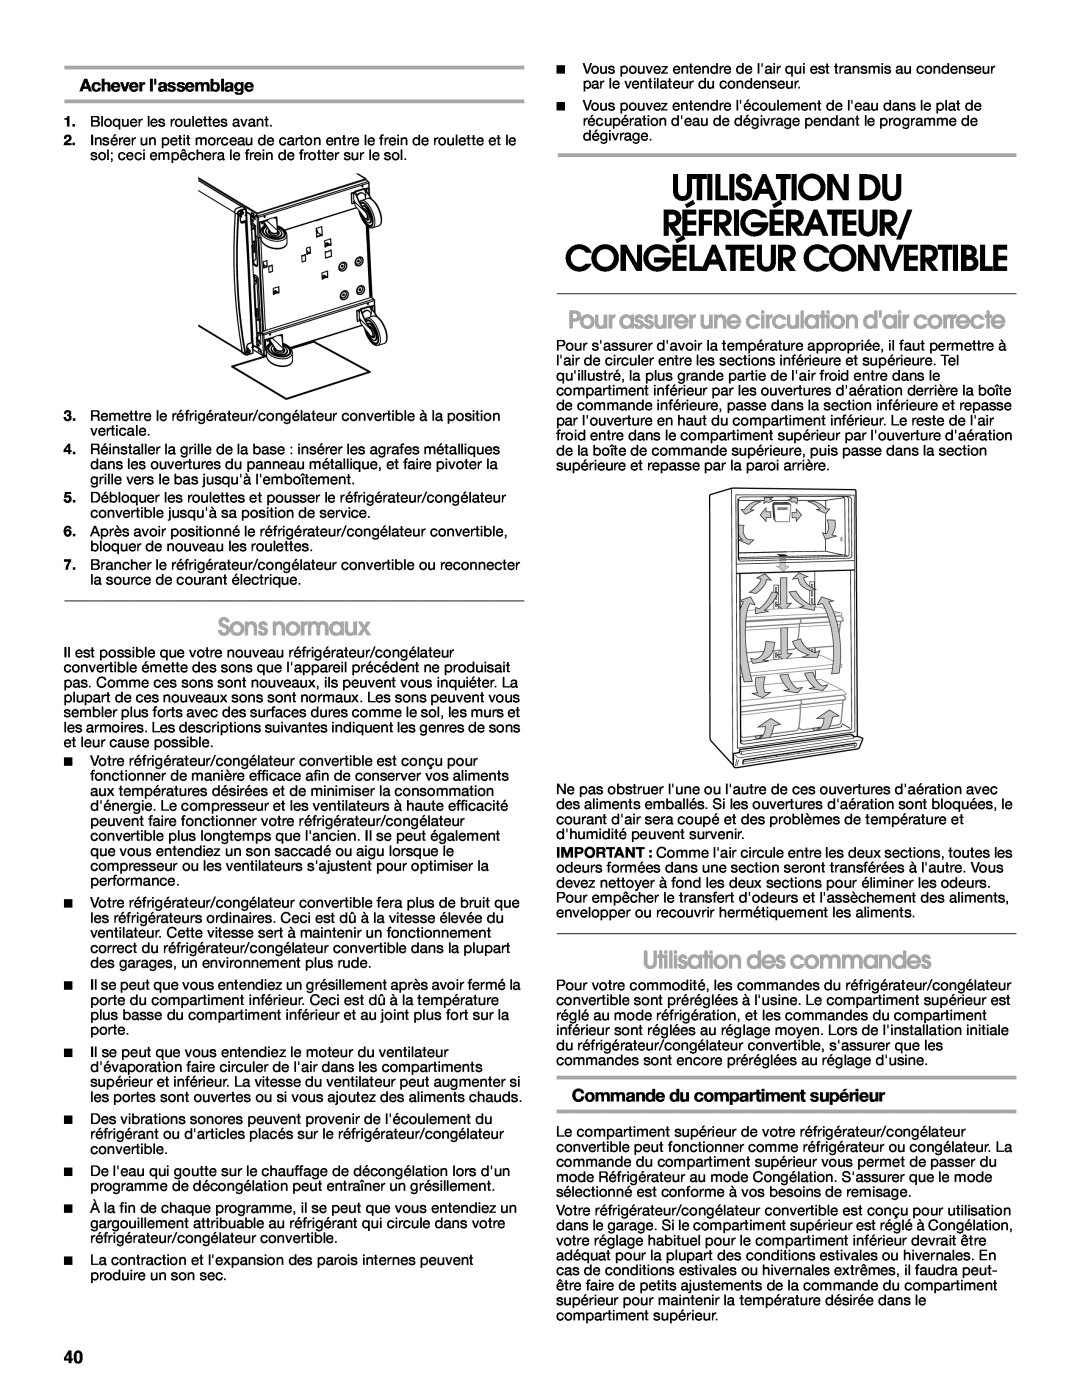 Whirlpool 2314466 manual Utilisation Du Réfrigérateur, Congélateur Convertible, Sons normaux, Utilisation des commandes 